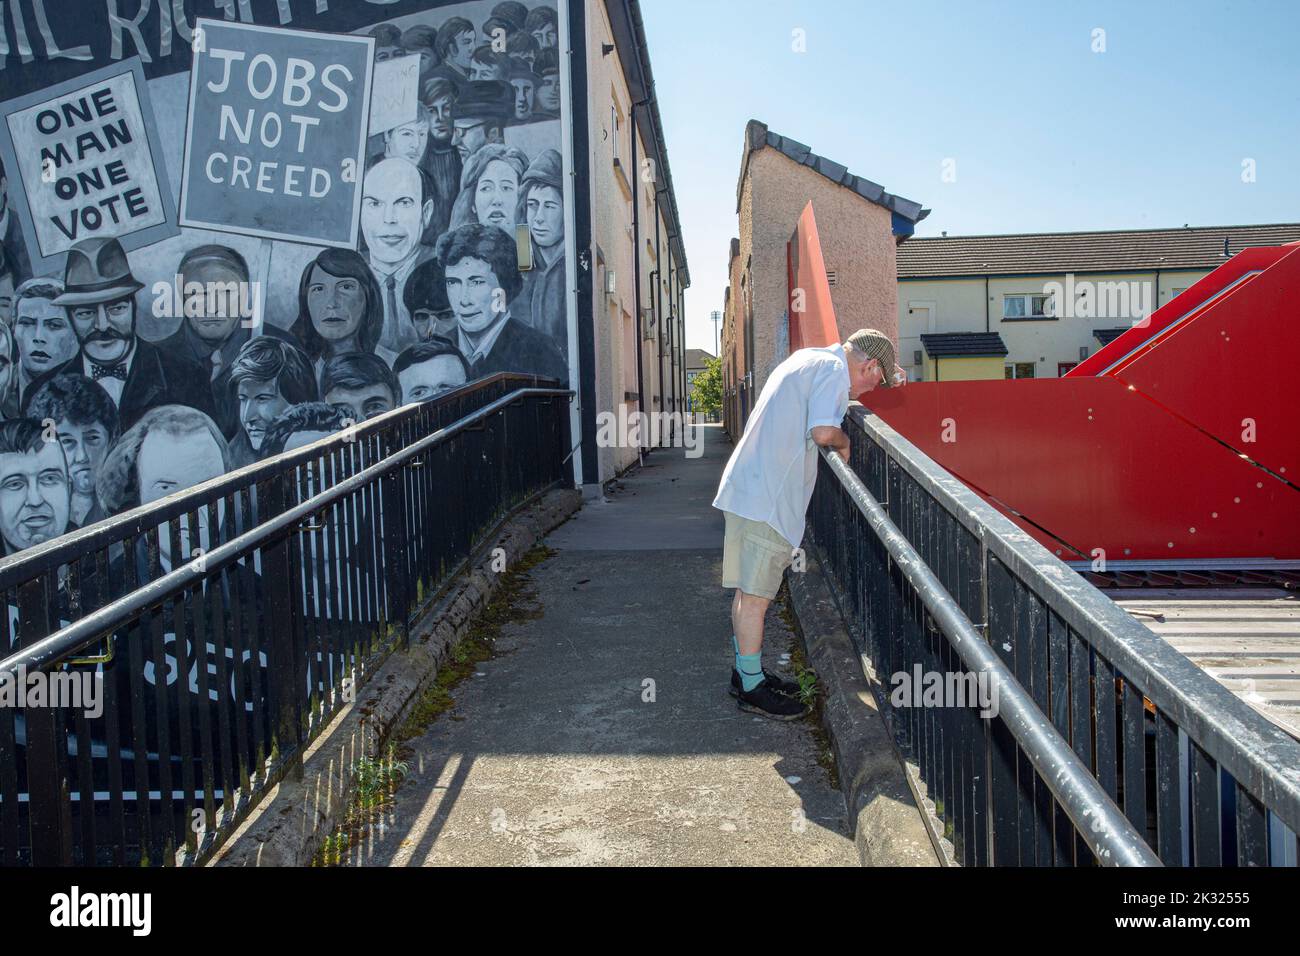 Un mural en Derry, representando los acontecimientos durante los disturbios en Irlanda del Norte Foto de stock